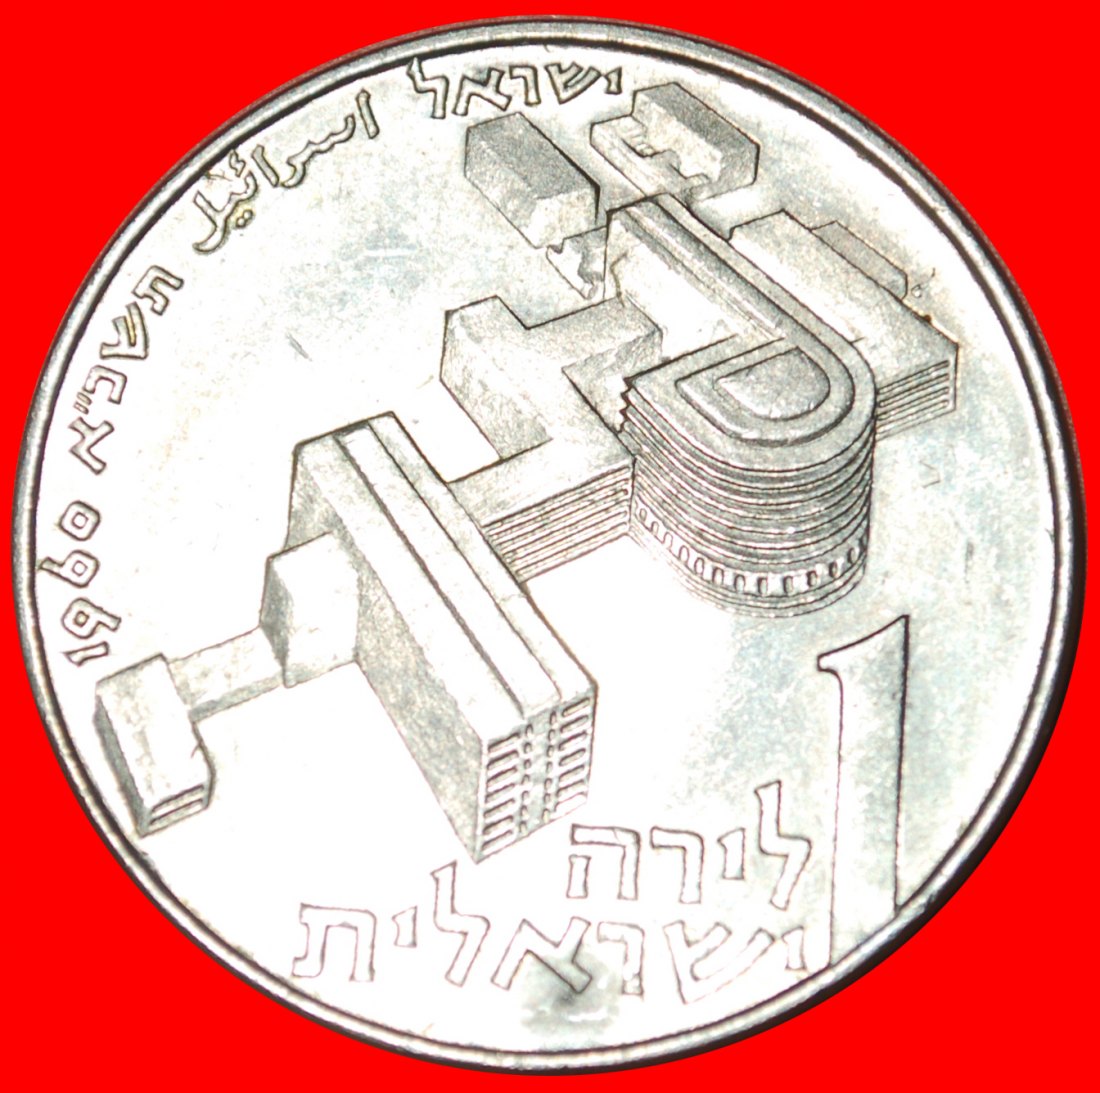  • LAMM UND MEDIZINZENTRUM: PALÄSTINA (israel) ★ 1 LIRA 1960! 0HNE VORBEHALT!   